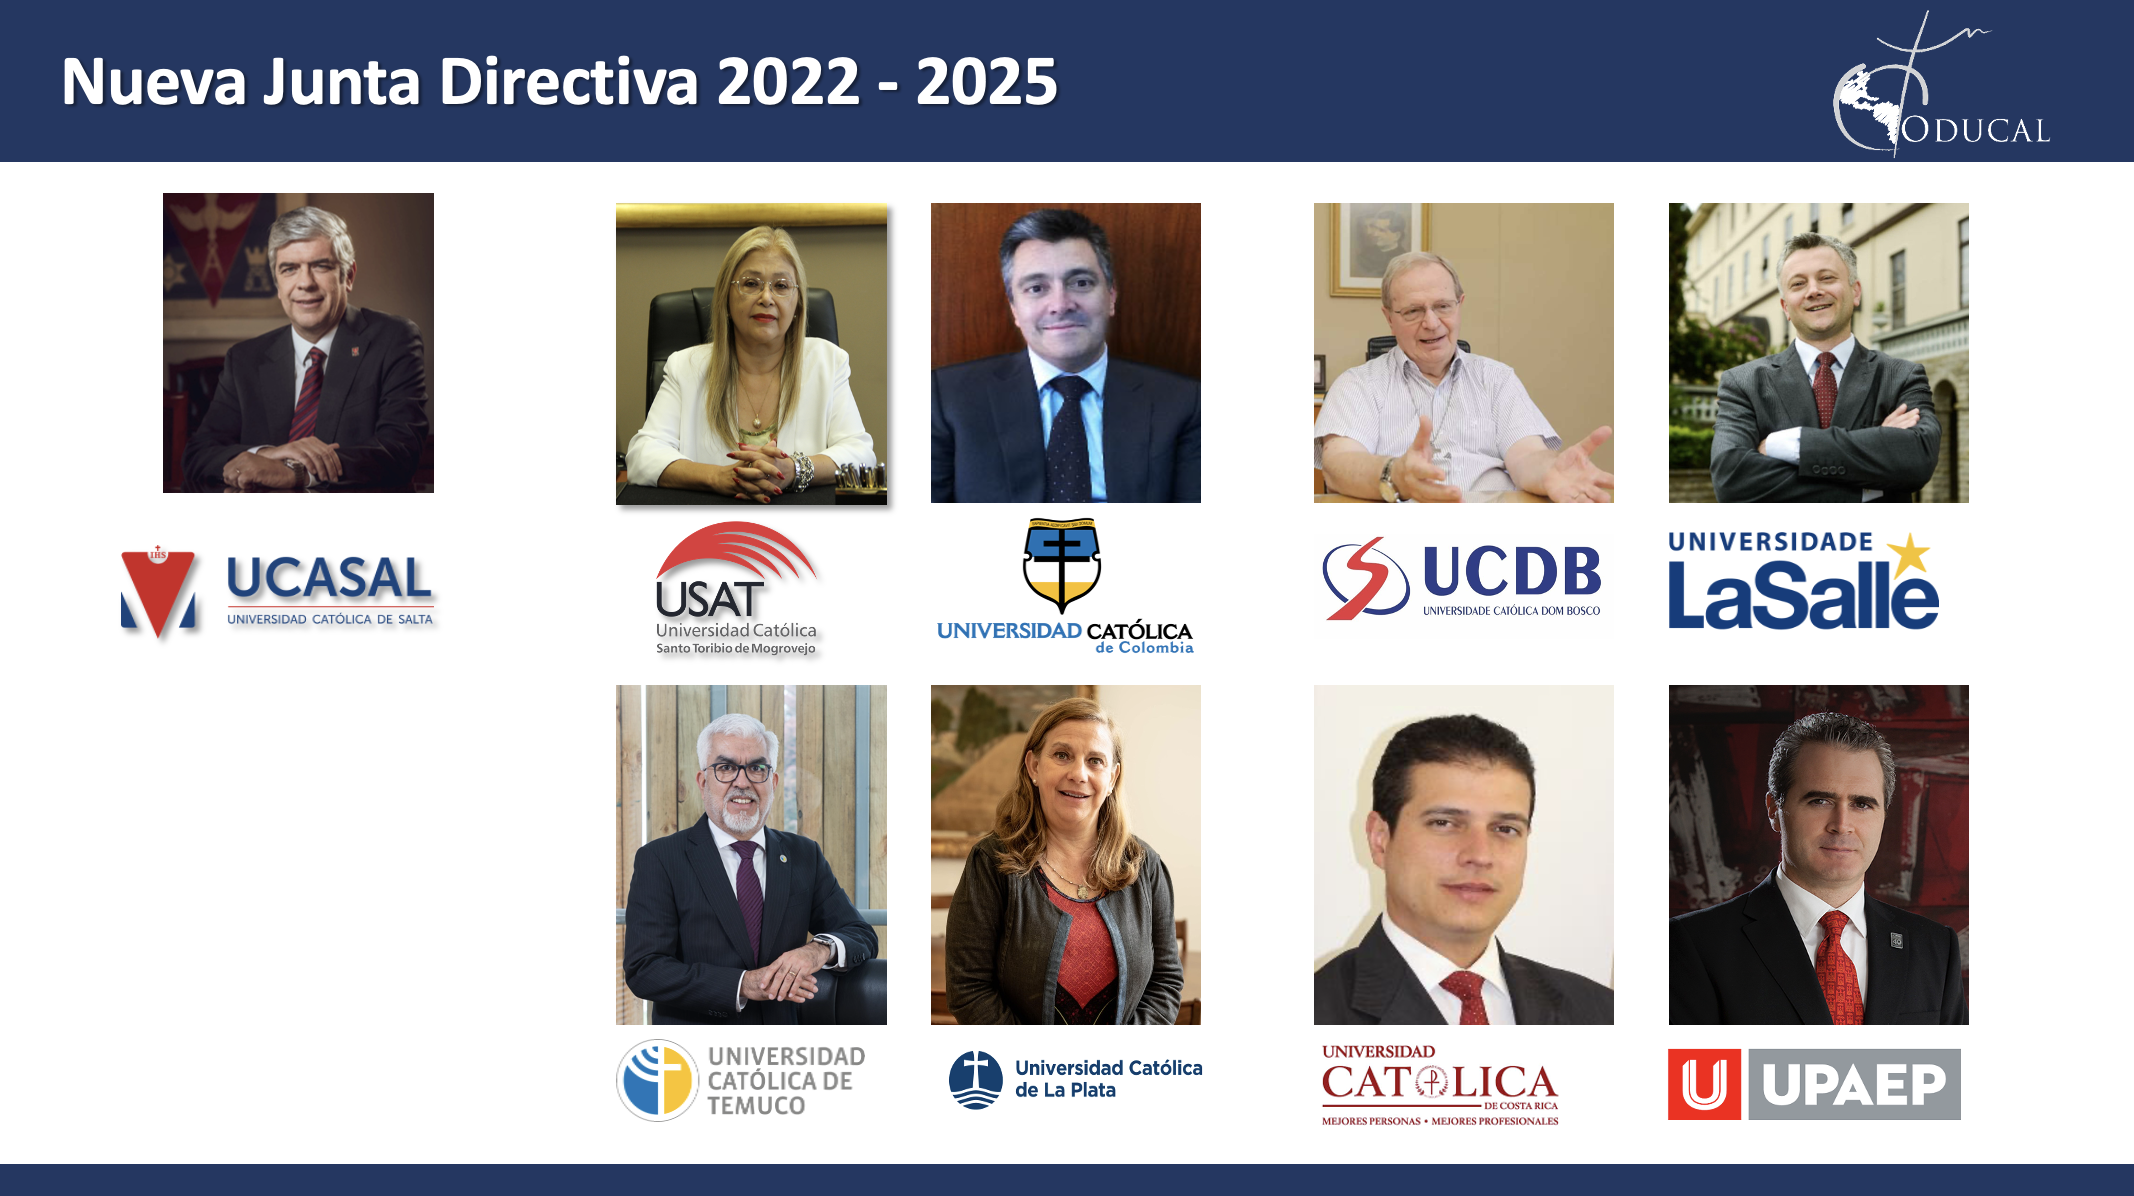 La ODUCAL presenta a su nueva Junta Directiva para el ciclo 2022-2025